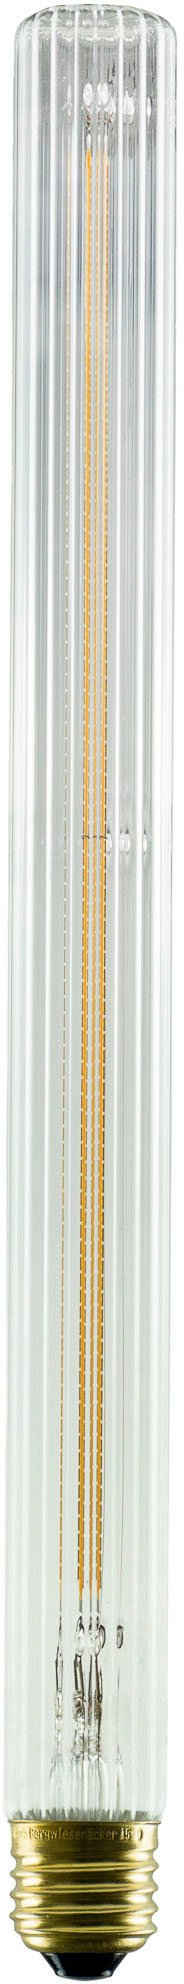 SEGULA LED-Leuchtmittel LED Long Tube 300 klar geriffelt, E27, 1 St., Extra-Warmweiß, LED Long Tube 300 klar geriffelt, E27, 4,5W, CRI 90, dimmbar